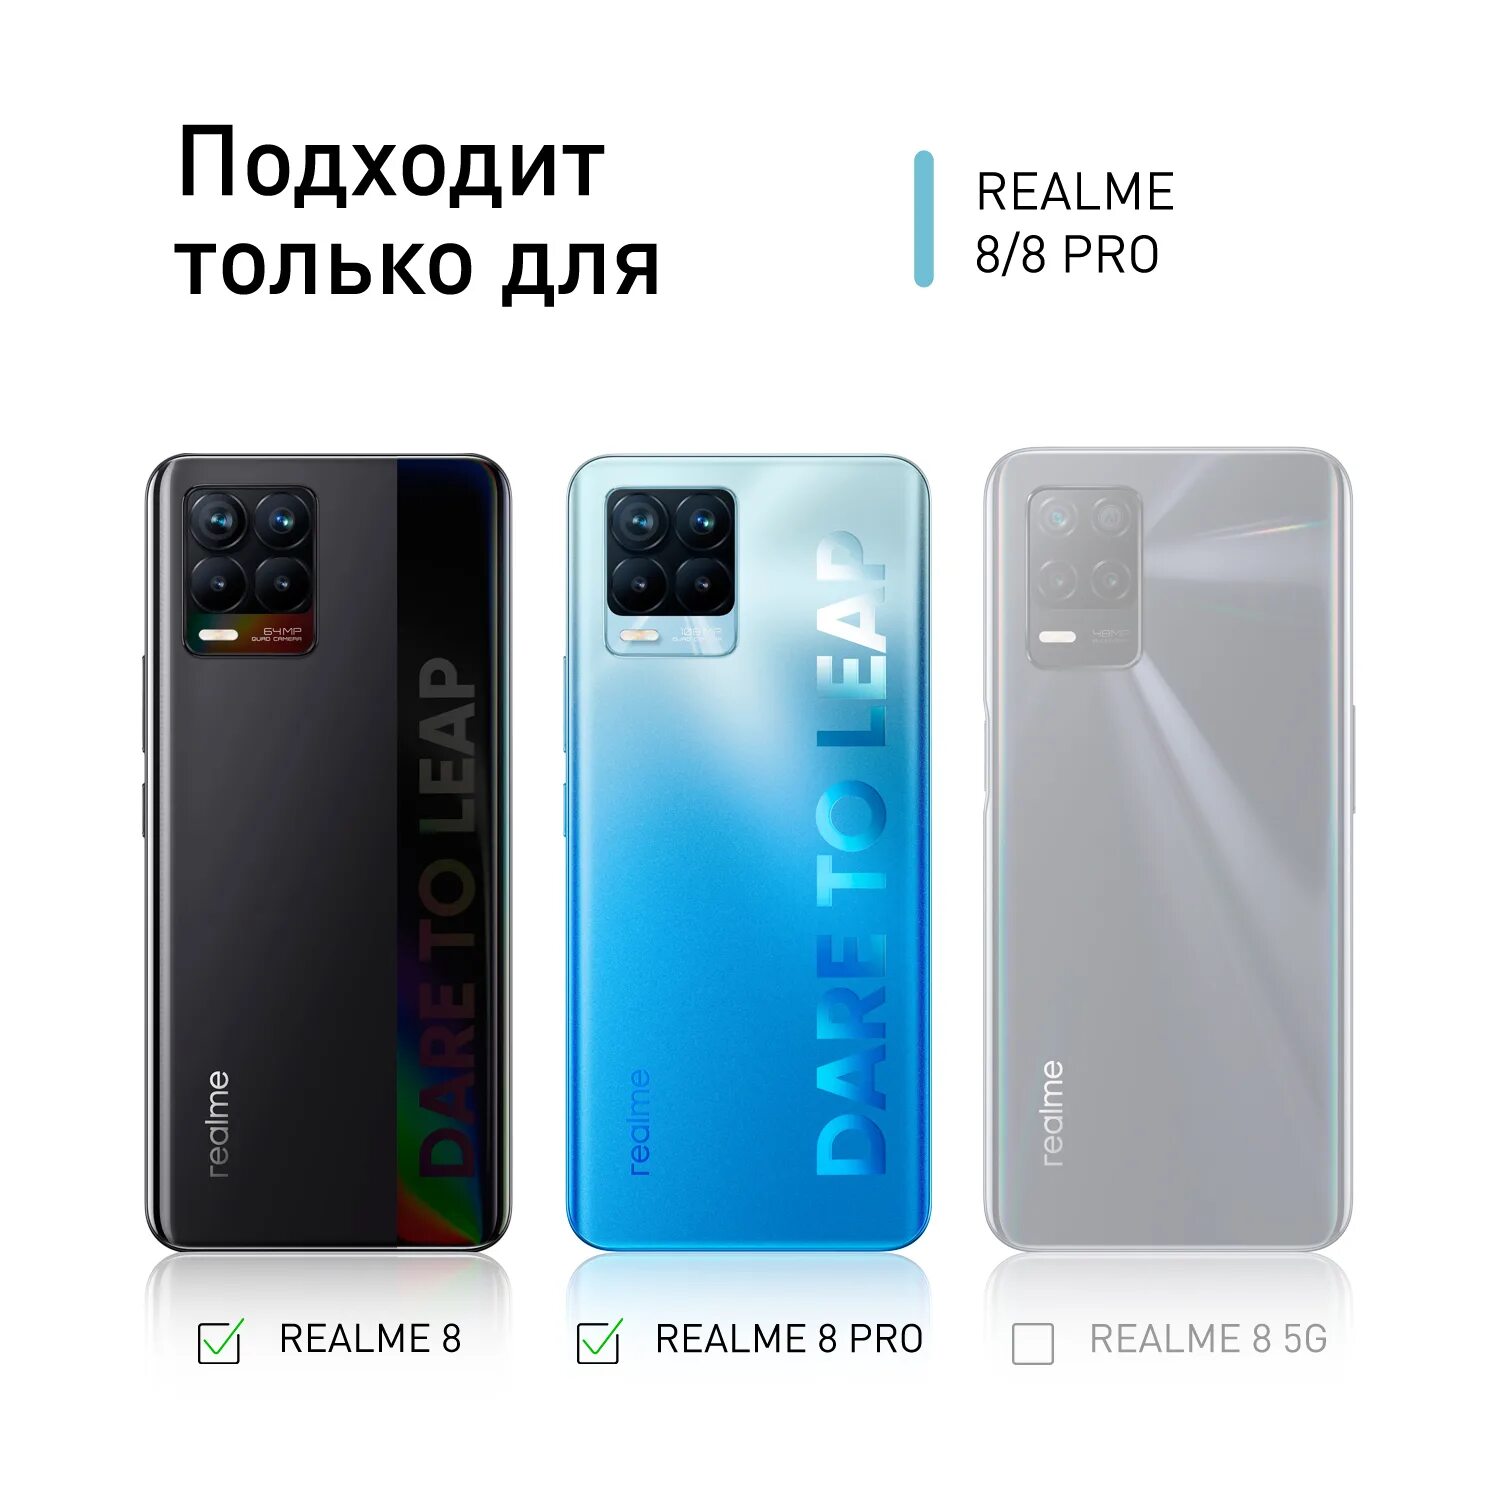 Реалми 11 про версии. Realme 8 Pro чехол. РЕАЛМИ 8. Realme 8 Pro запчасти. Realme 8 Pro цвета.